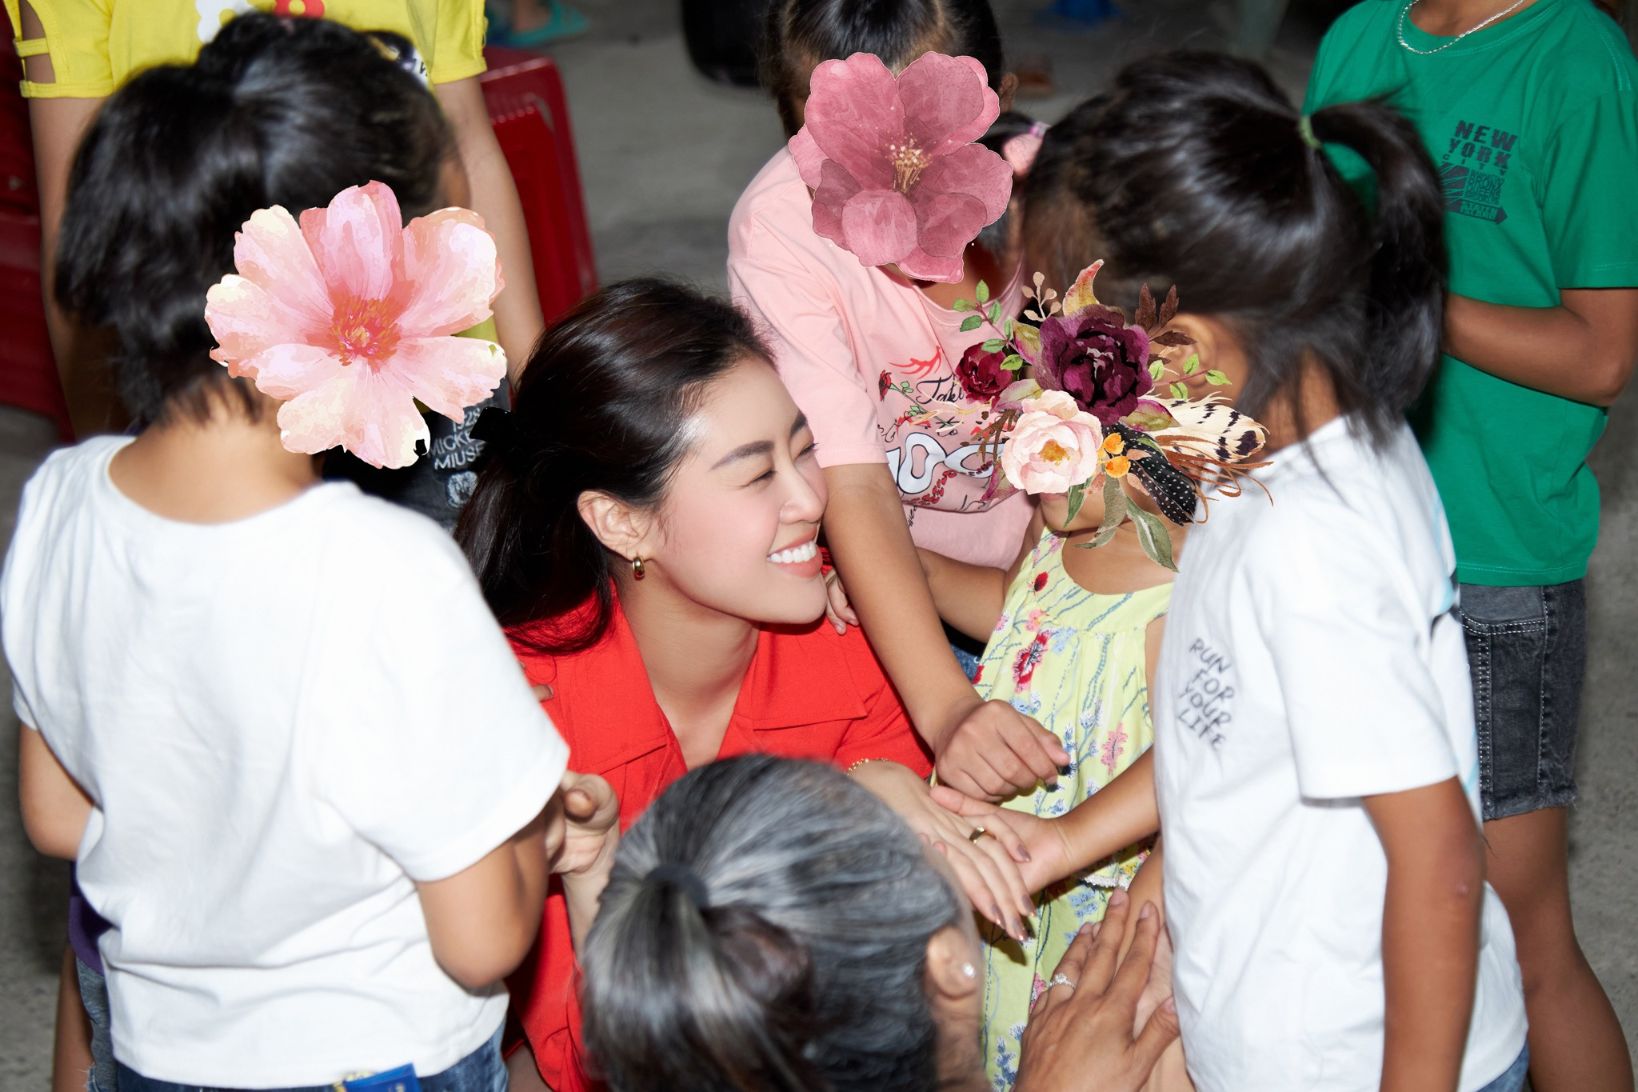 Hoa hau Khanh Van den tham ngoi nha OBV1 Hoa hậu Khánh Vân lì xì, gửi lời chúc năm mới các em ngôi nhà OBV